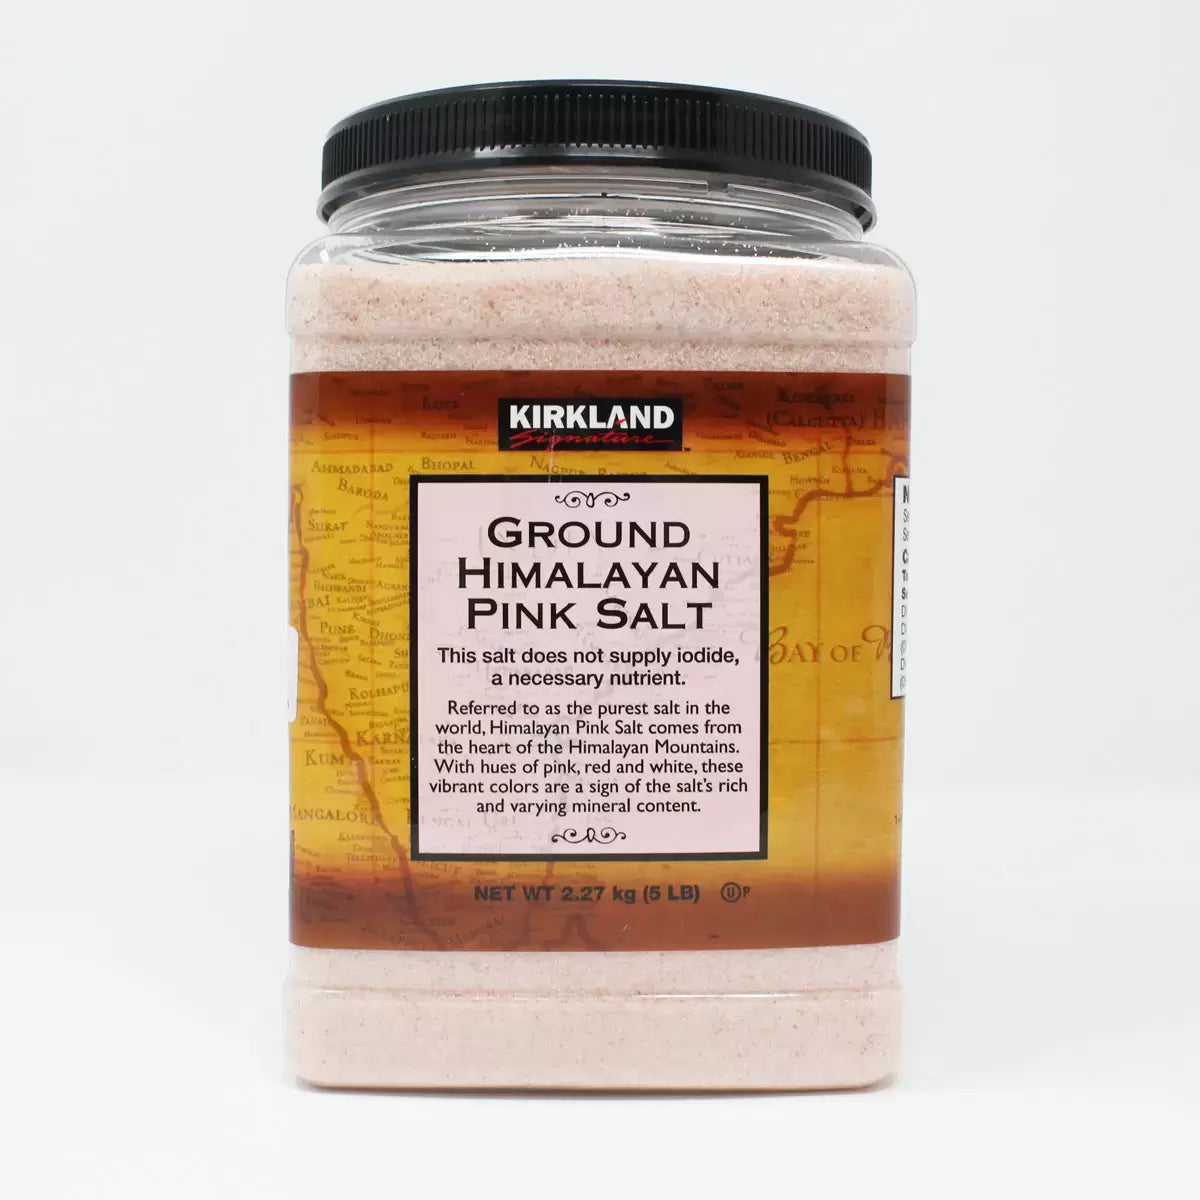 Kirkland Signature Ground Himalayan Pink Salt, 2.27kg GoDiscount